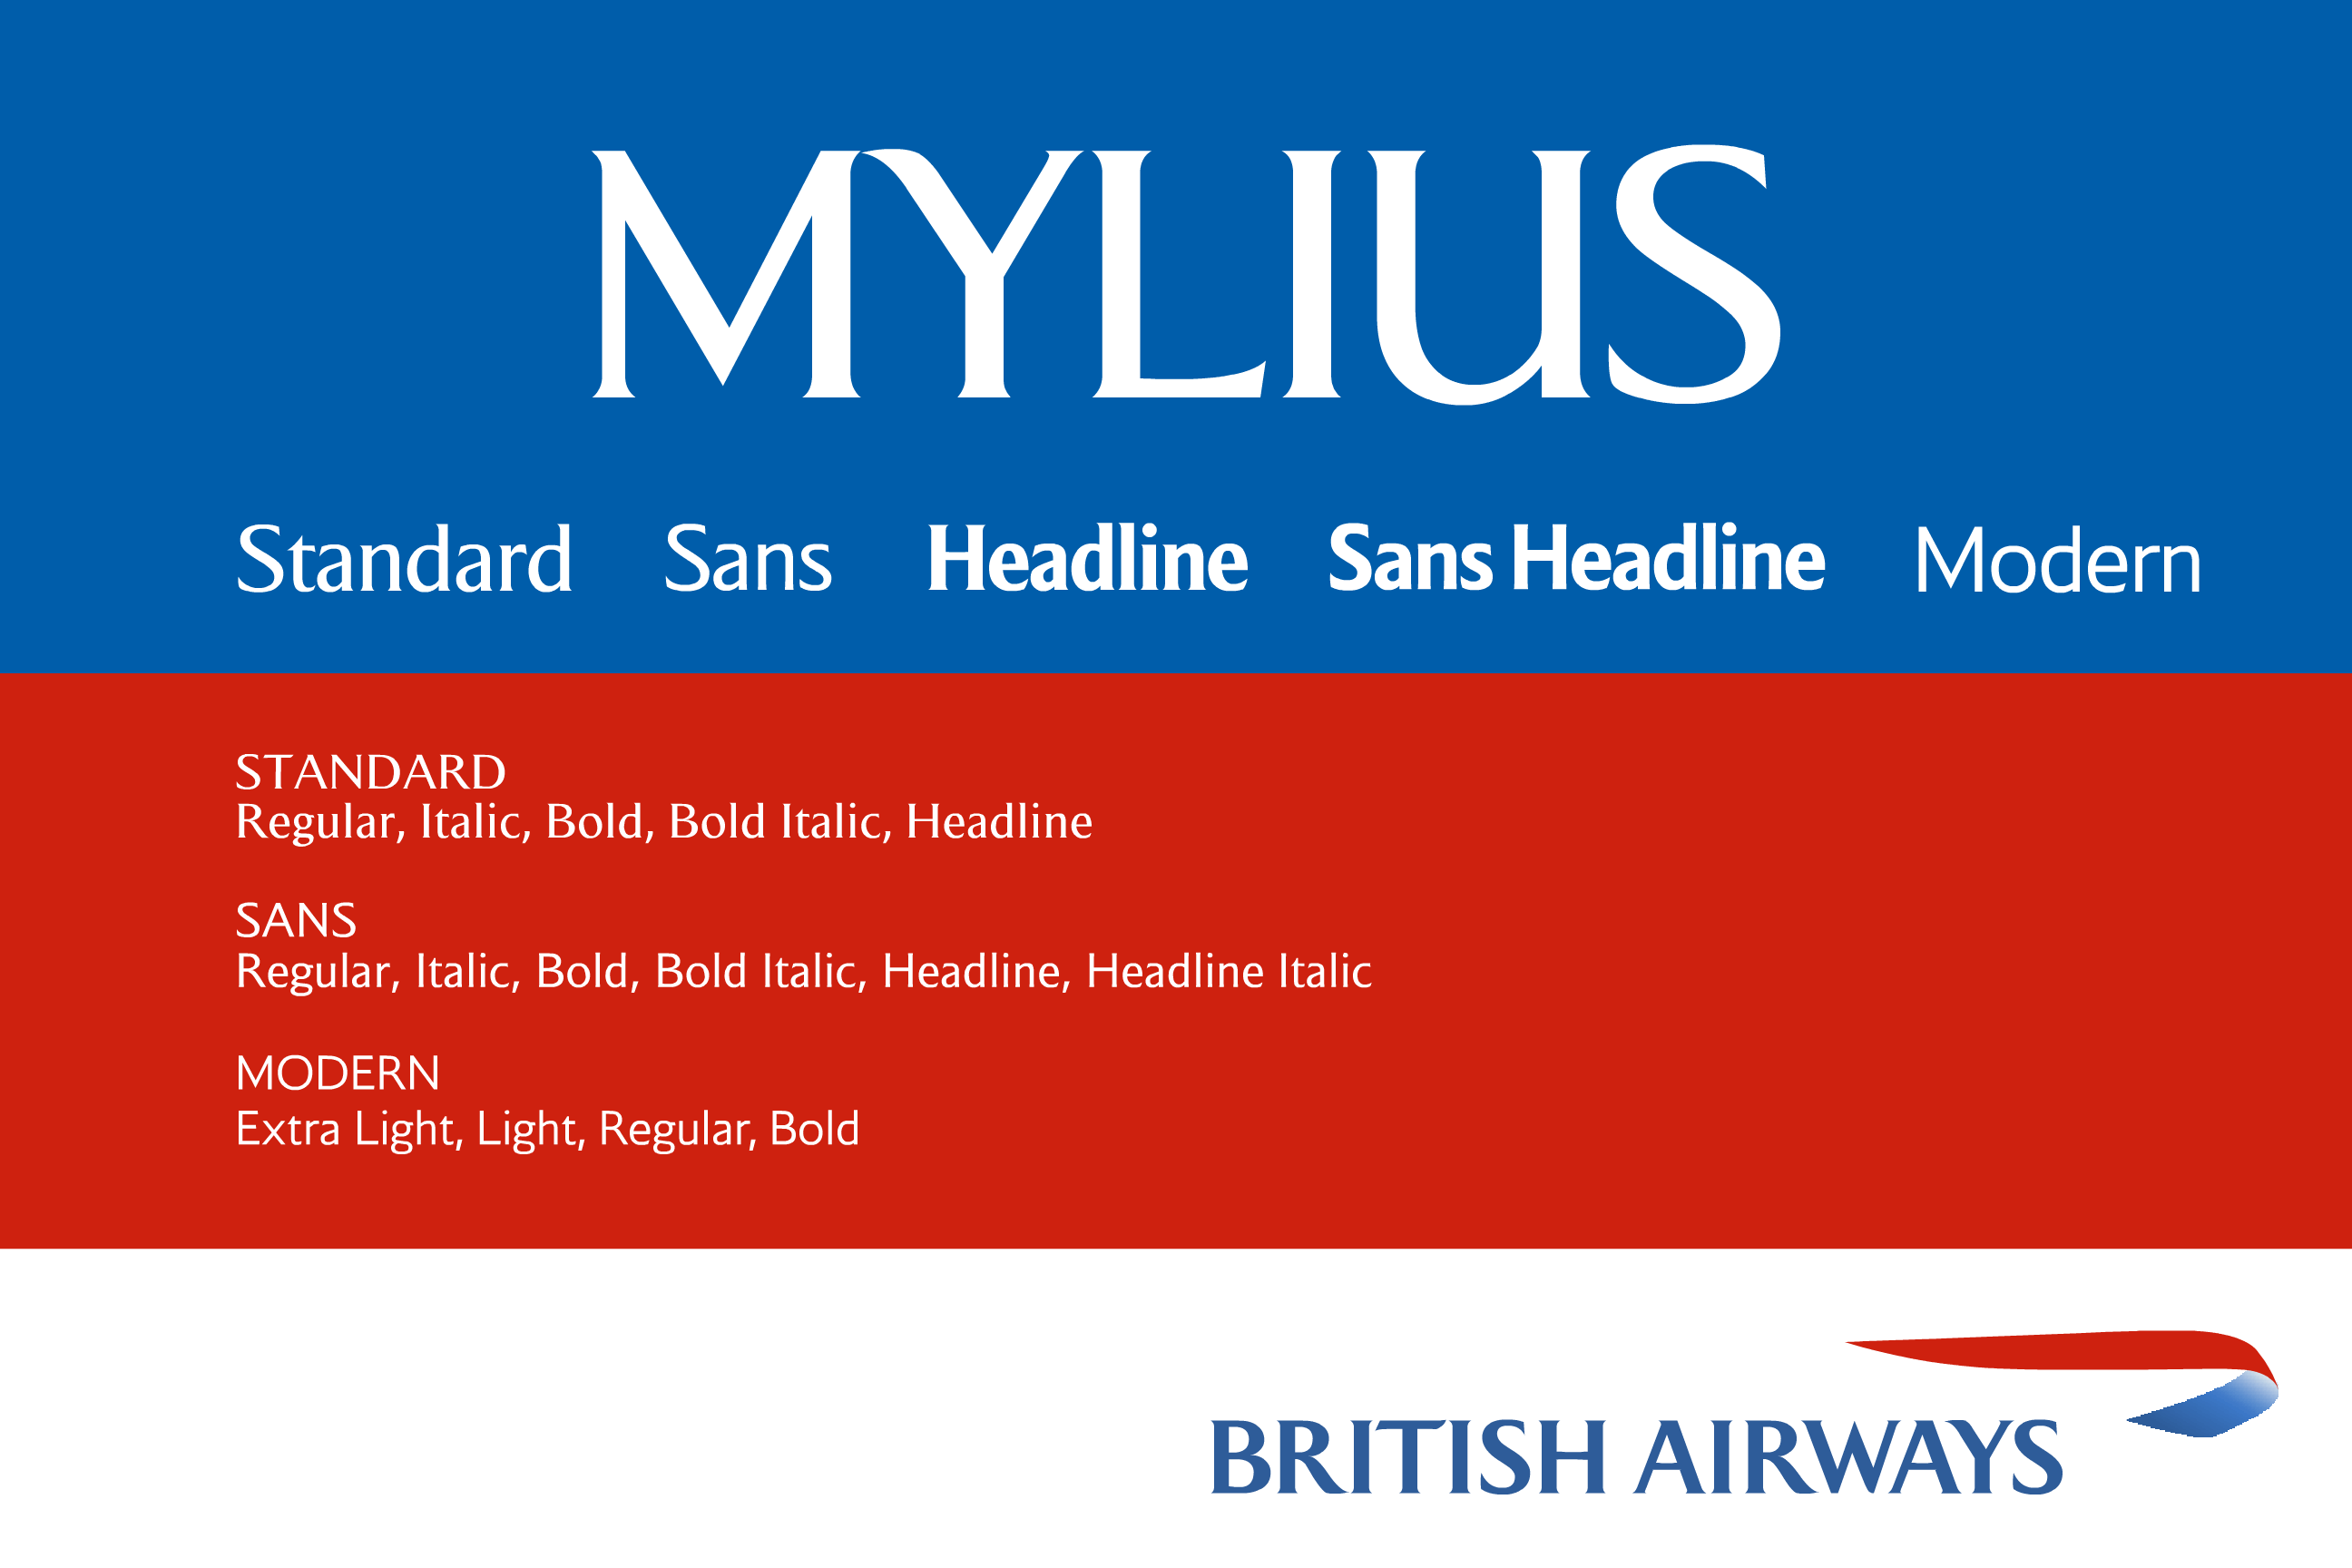 Ejemplo de fuente Mylius (British Airways)